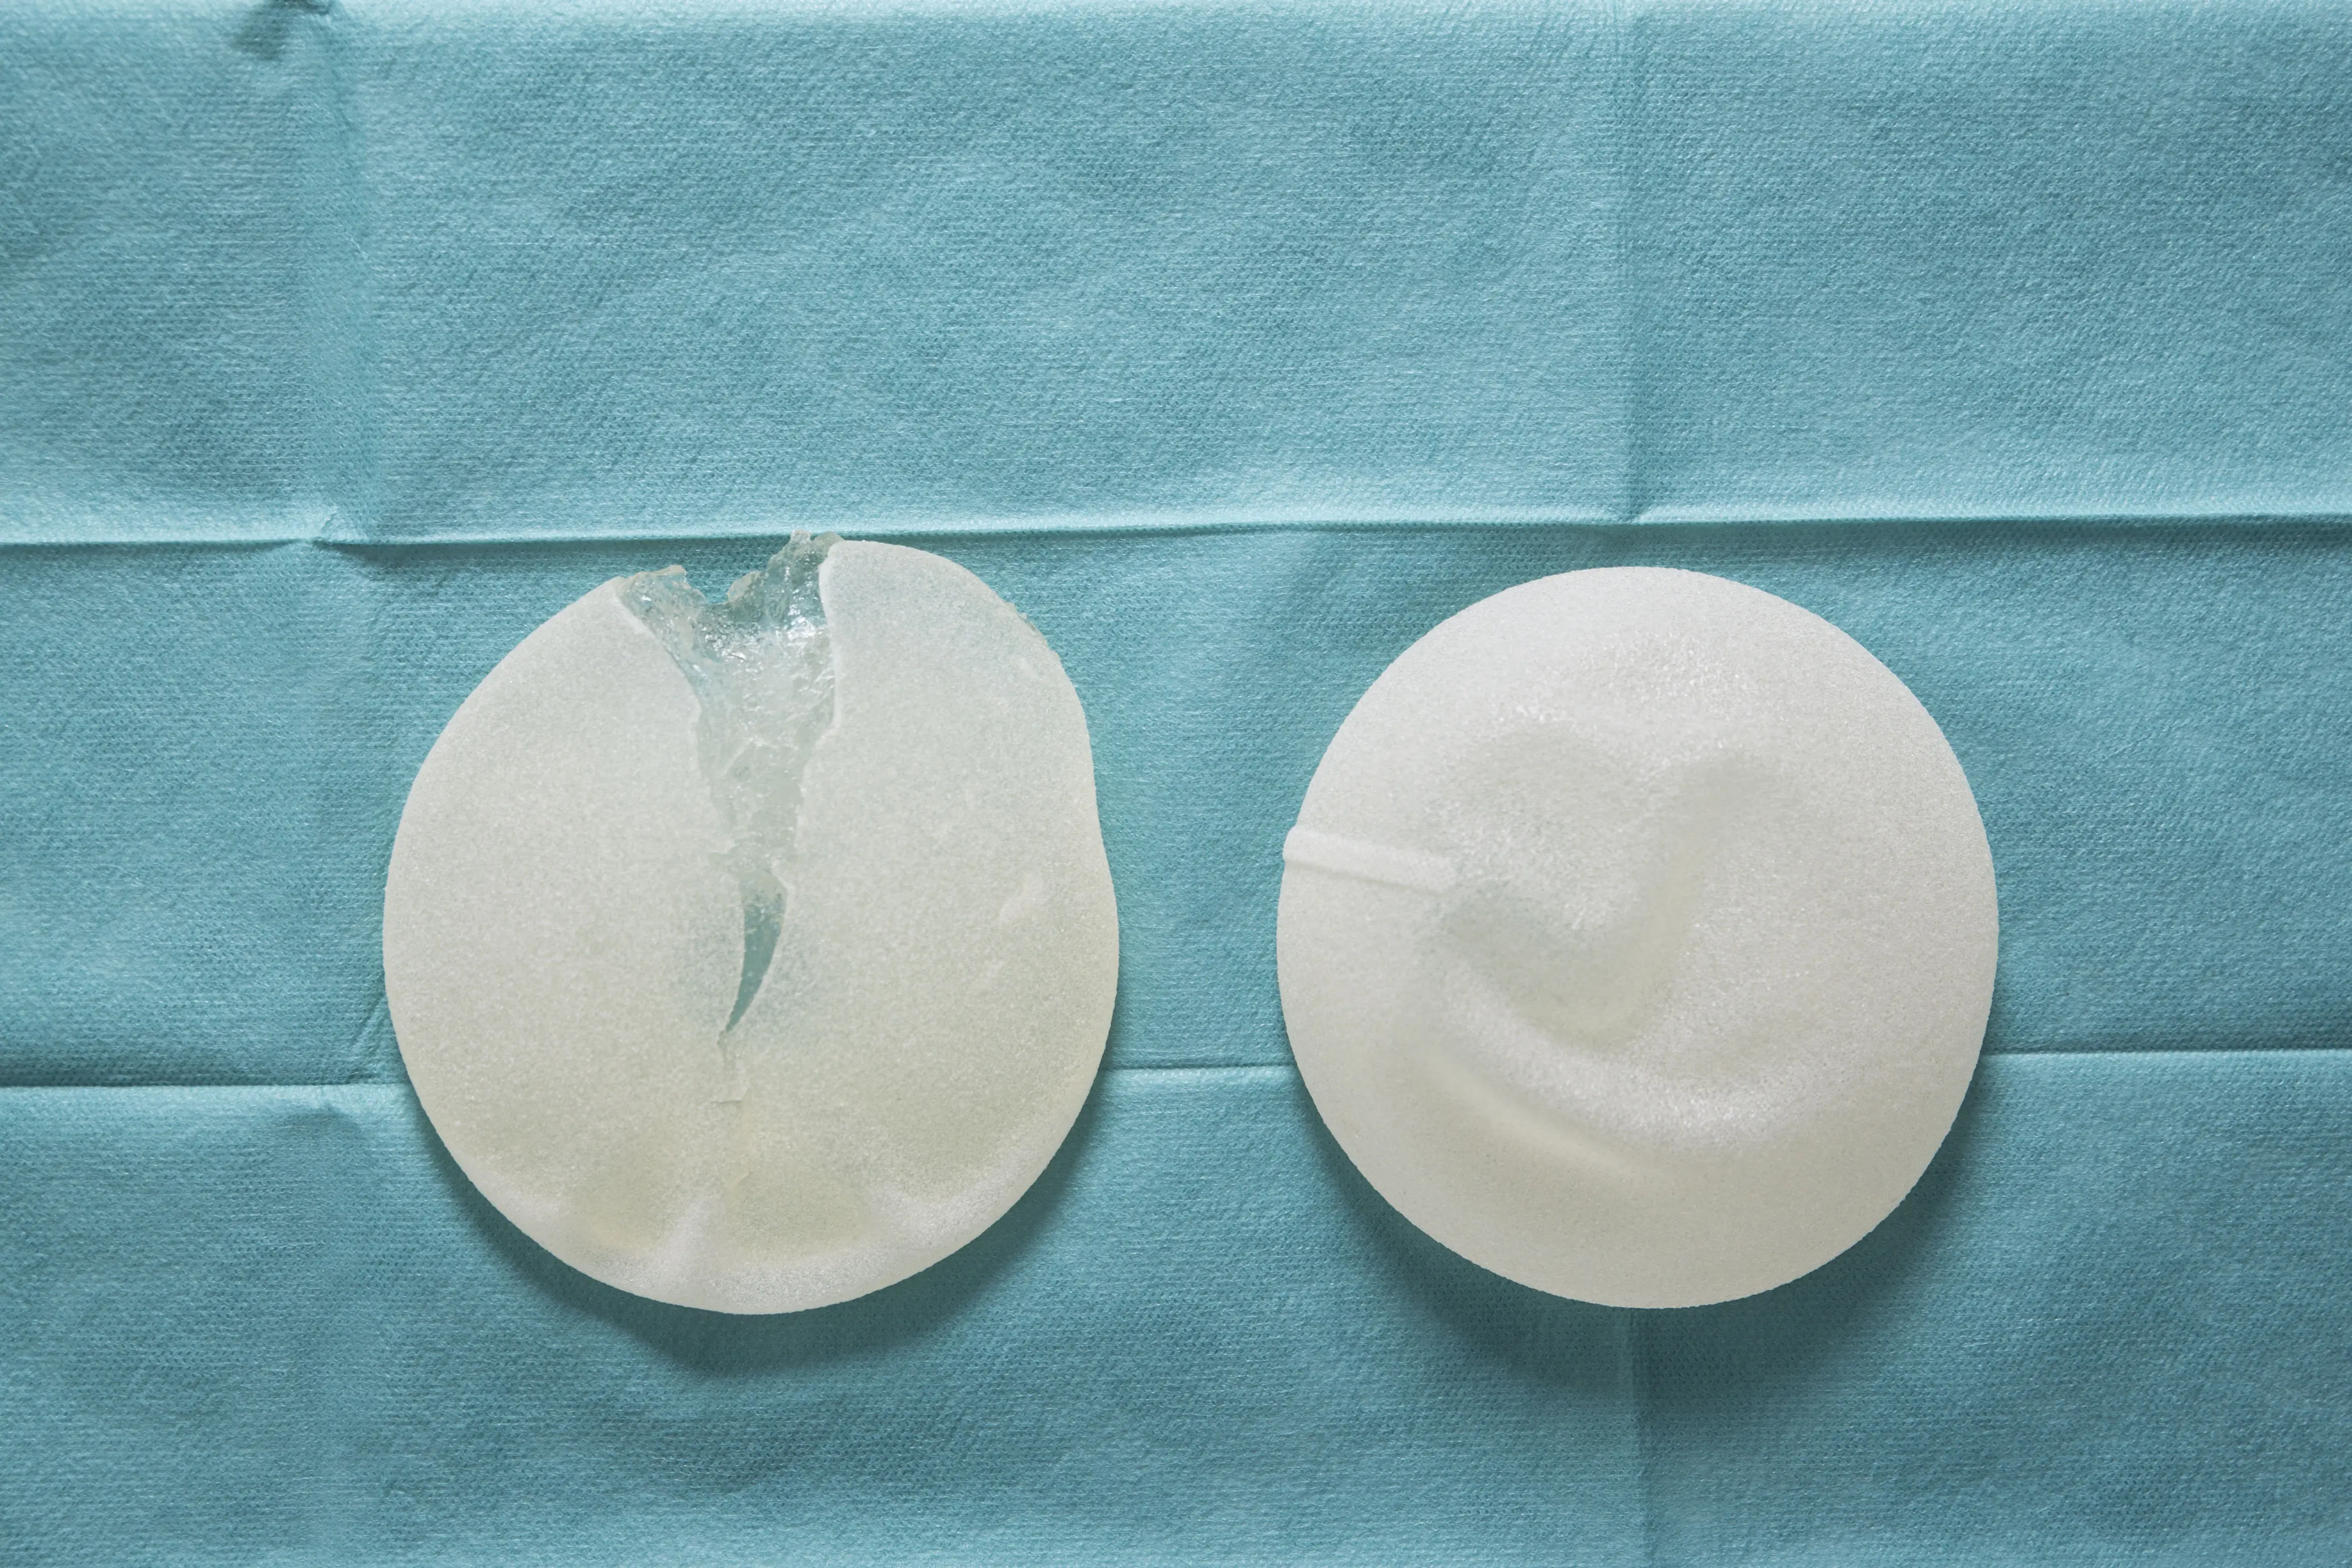 Symbolbild: Brustimplantate aus Silikon auf einem OP Tuch. Eines der beiden Vorführmodelle hat einen Riß.